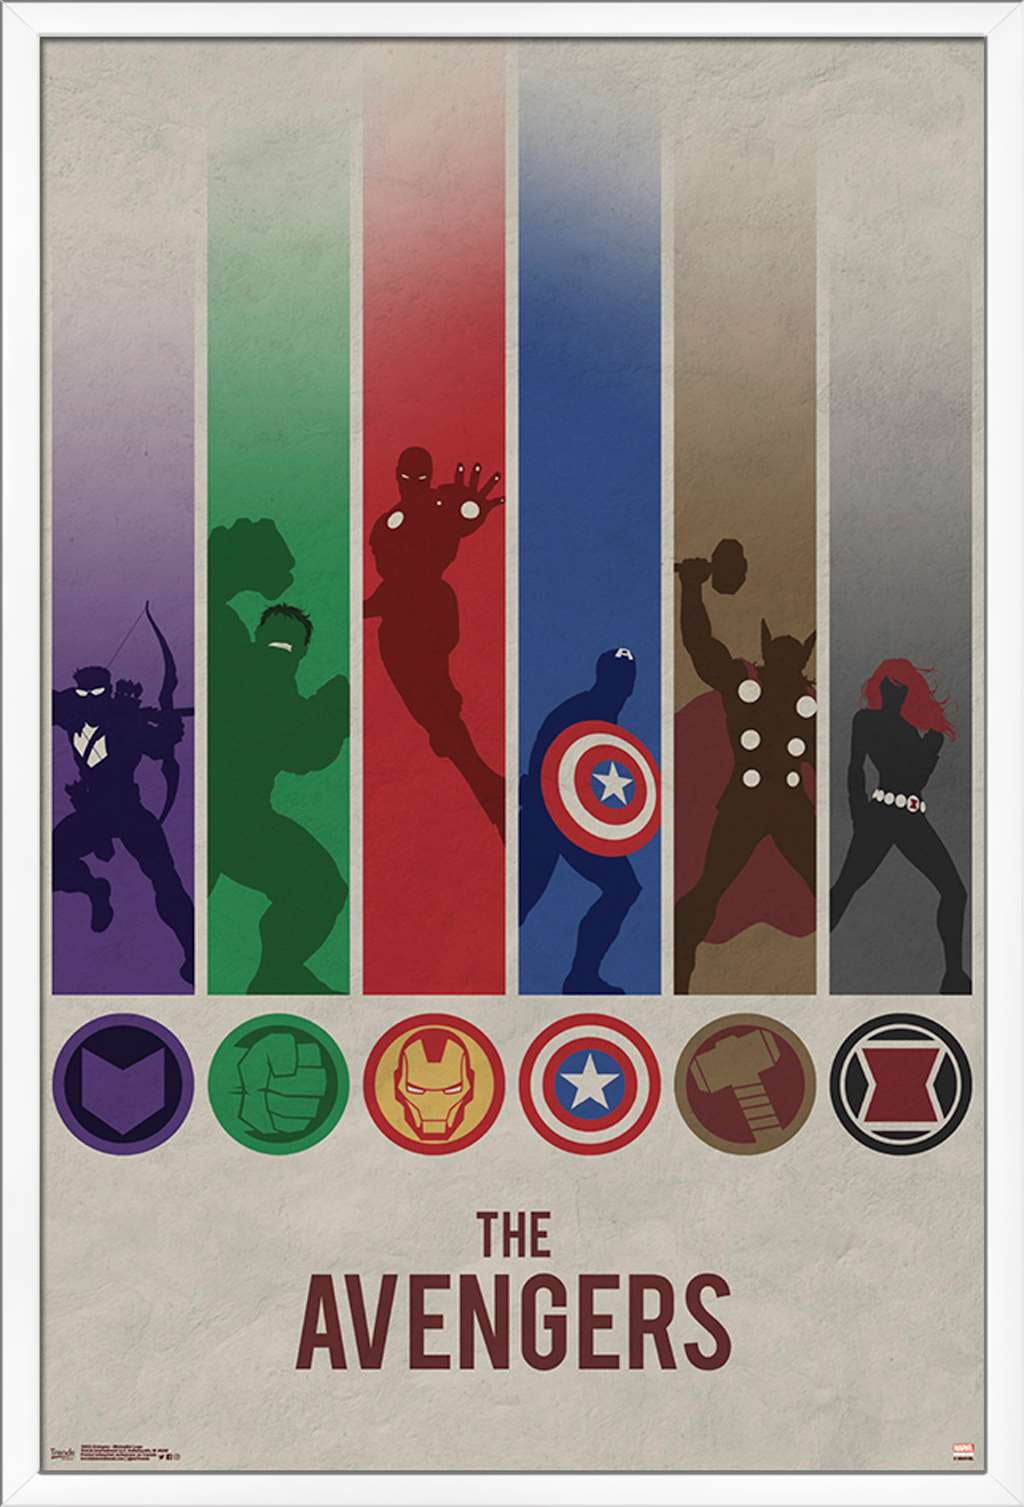 Marvel Secret Invasion - Logo Wall Poster, 22.375 x 34, Framed 